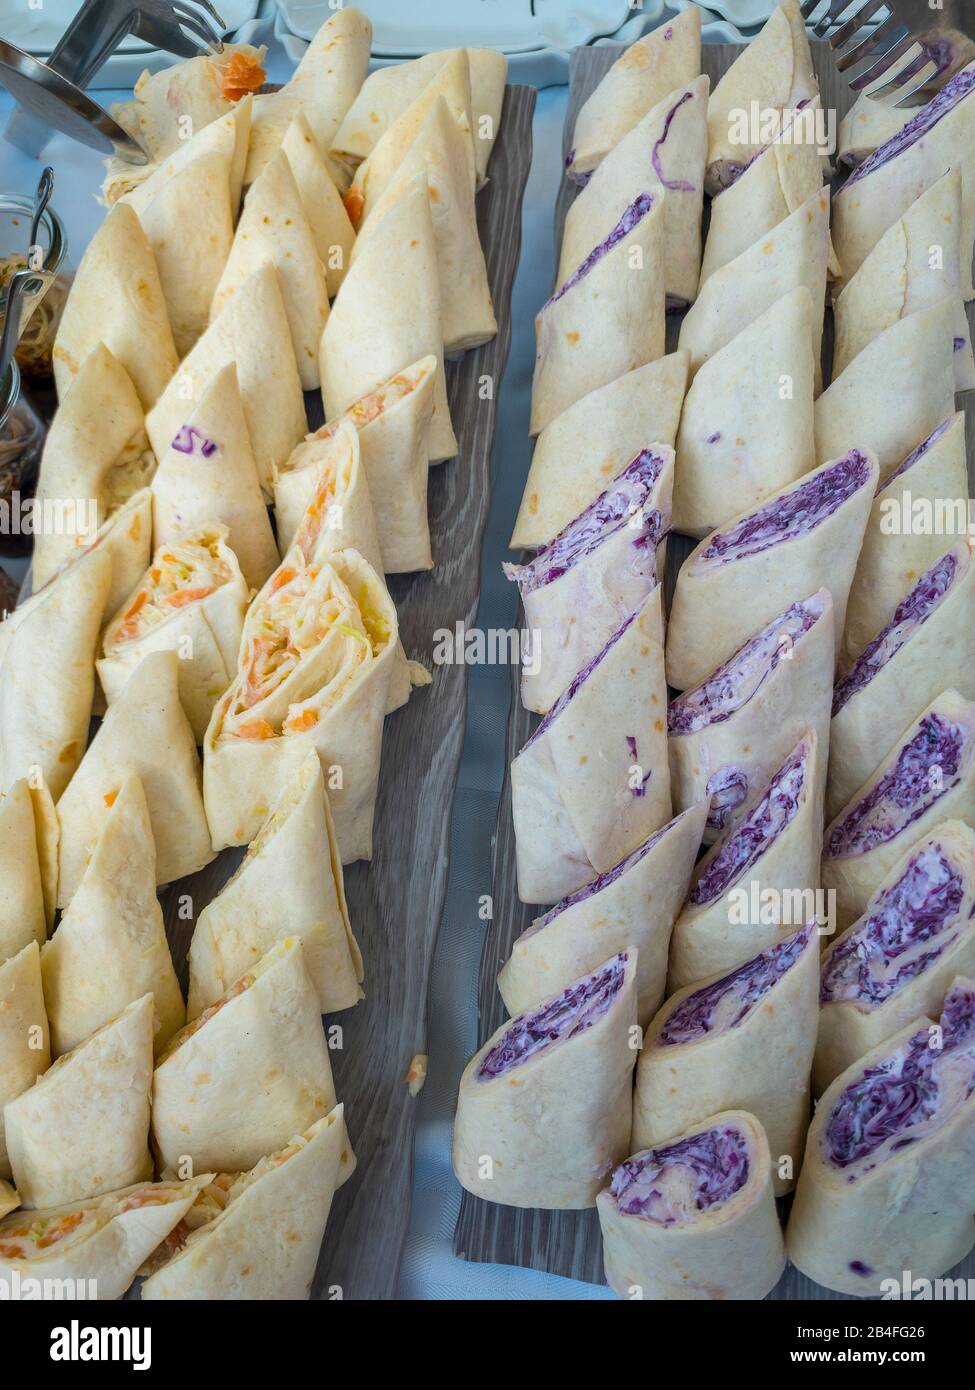 Stuffed dumplings, snacks Stock Photo